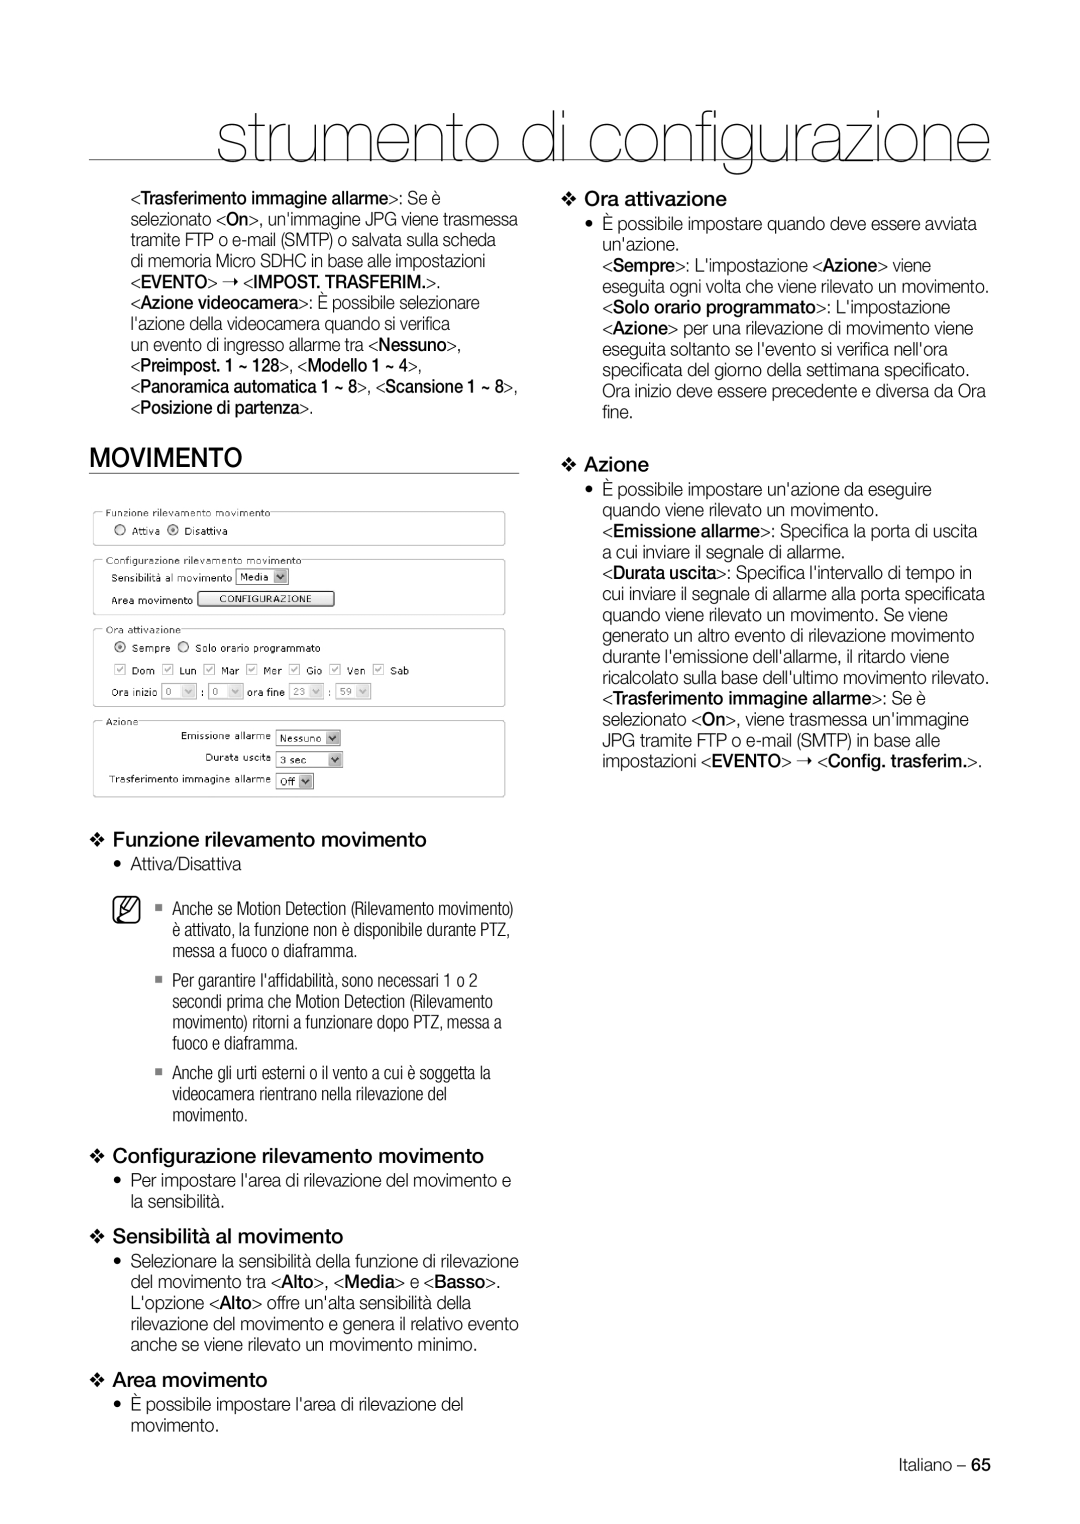 Samsung SNC-C7225P manual Movimento, Funzione rilevamento movimento, Conﬁgurazione rilevamento movimento, Area movimento 